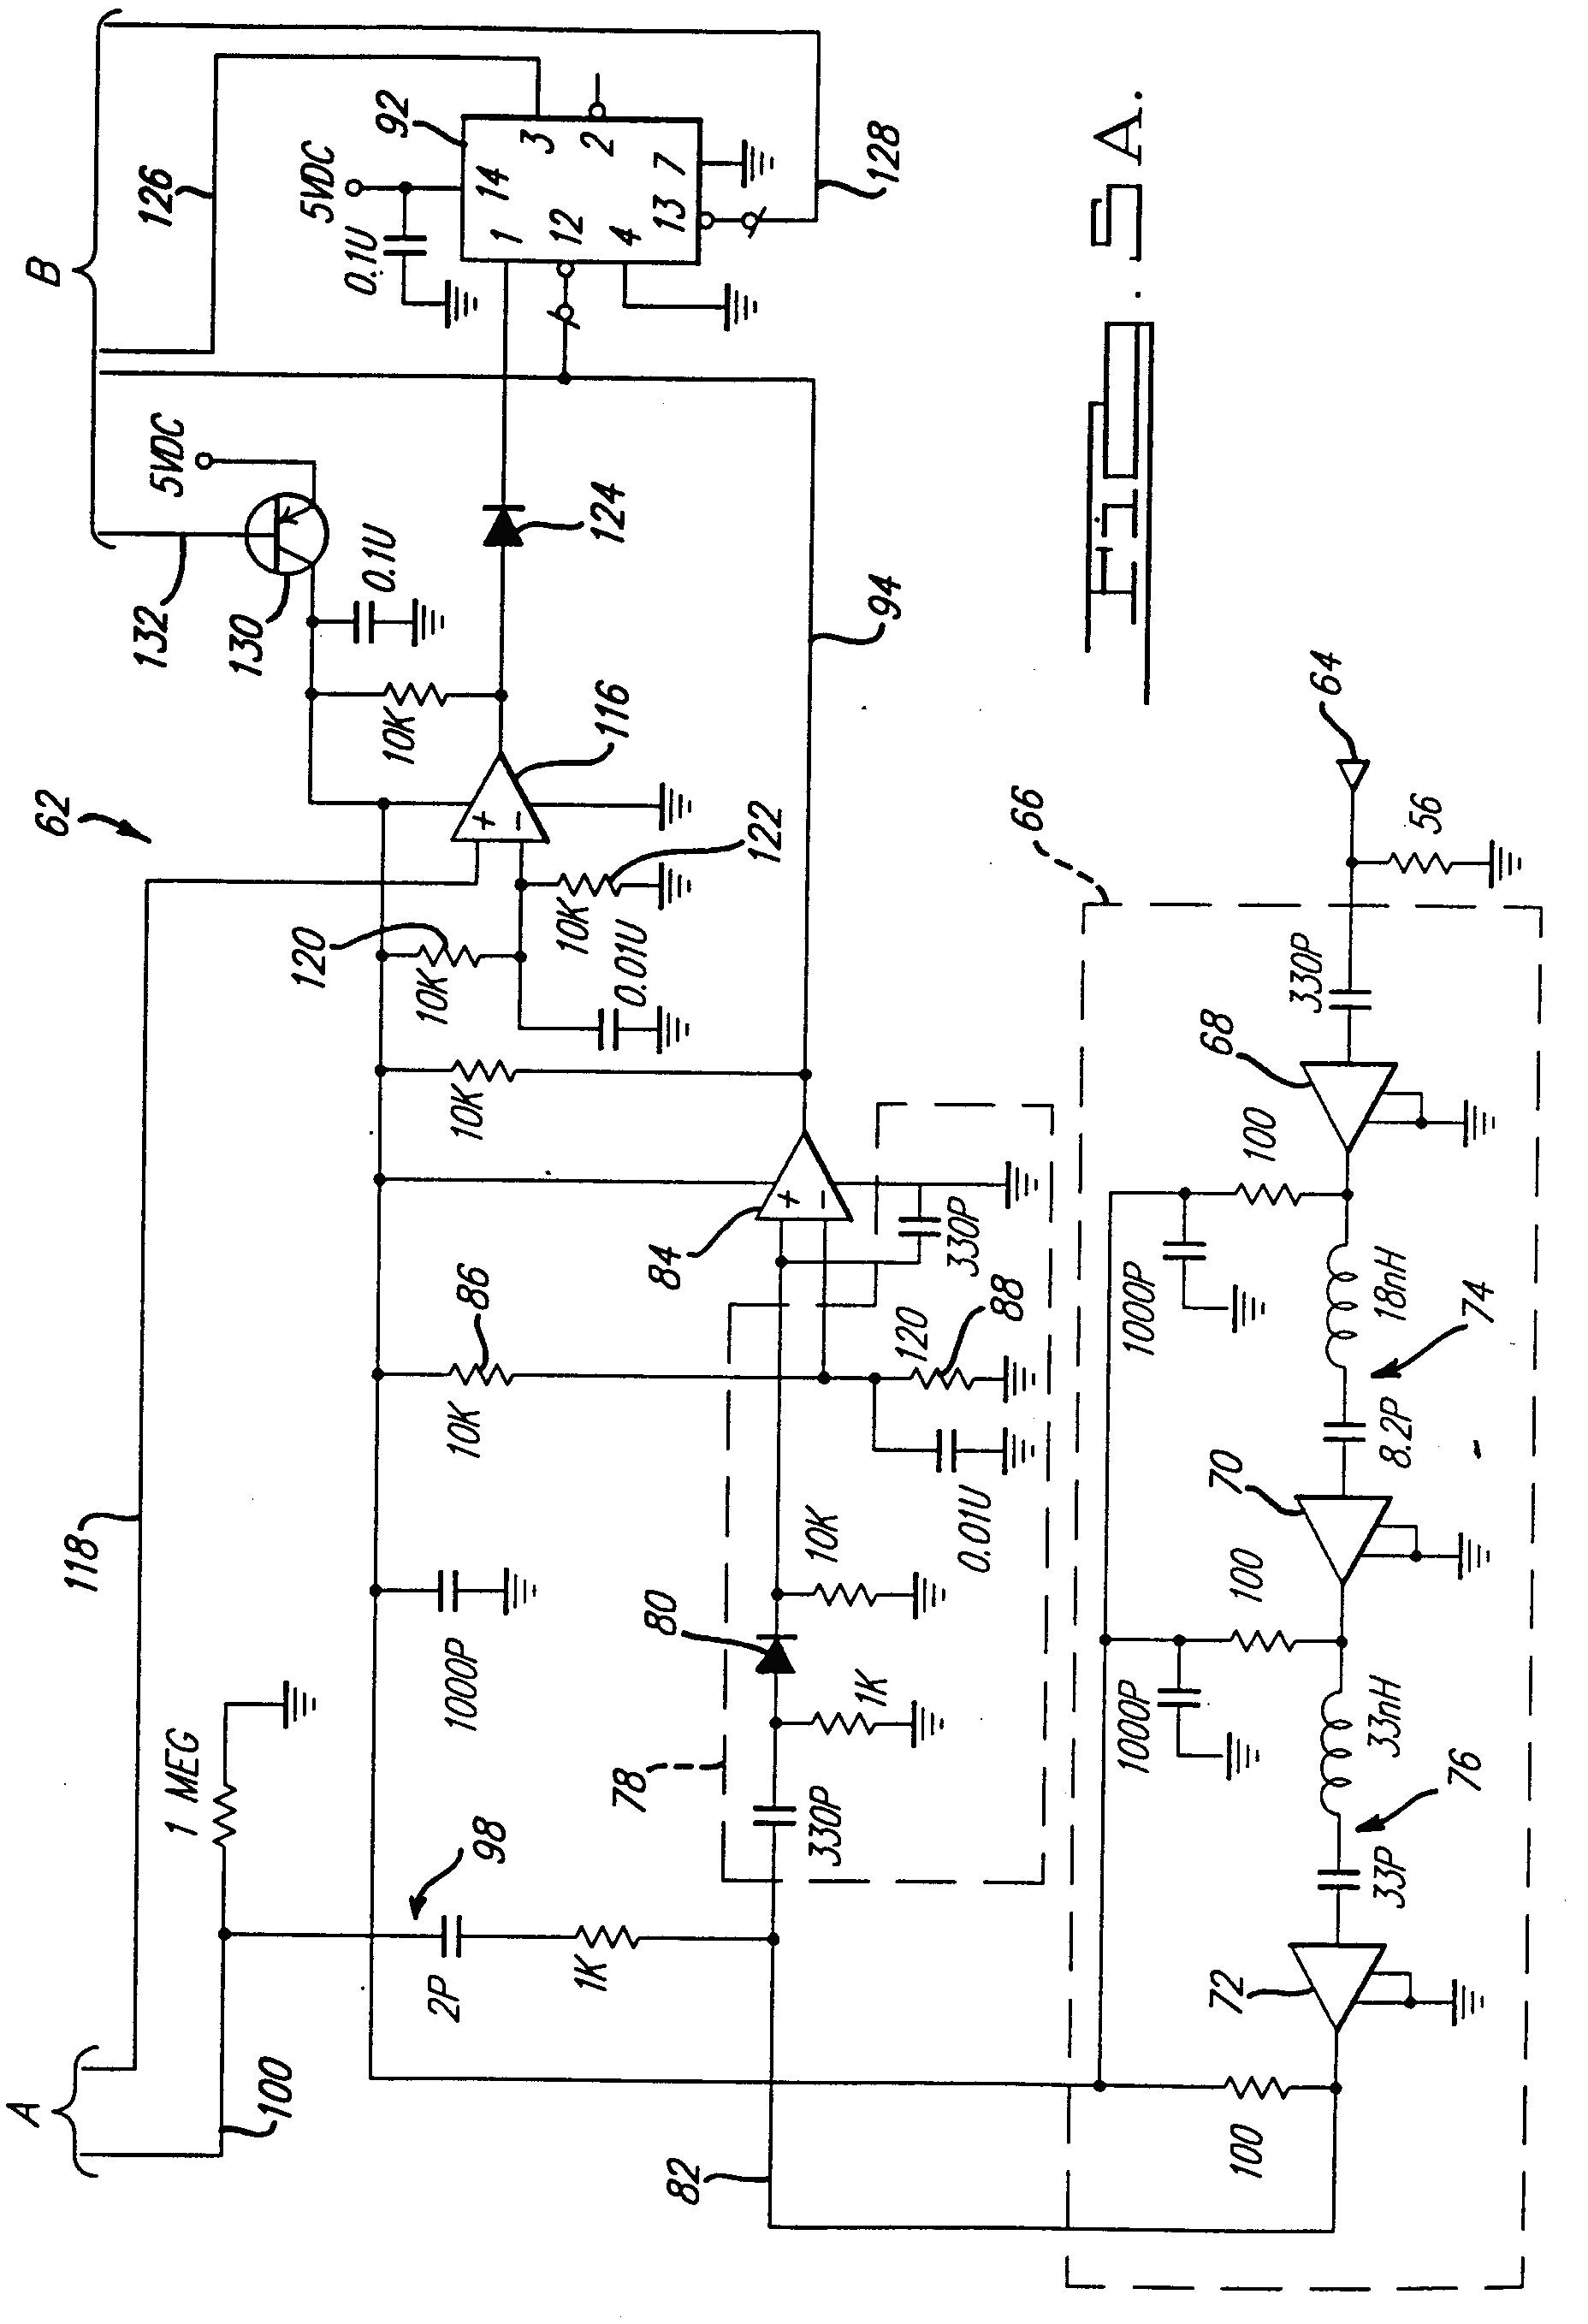 Wiring Diagram Genie Garage Door Opener Free Download Wiring Wire Wiring Diagram for Lift Master